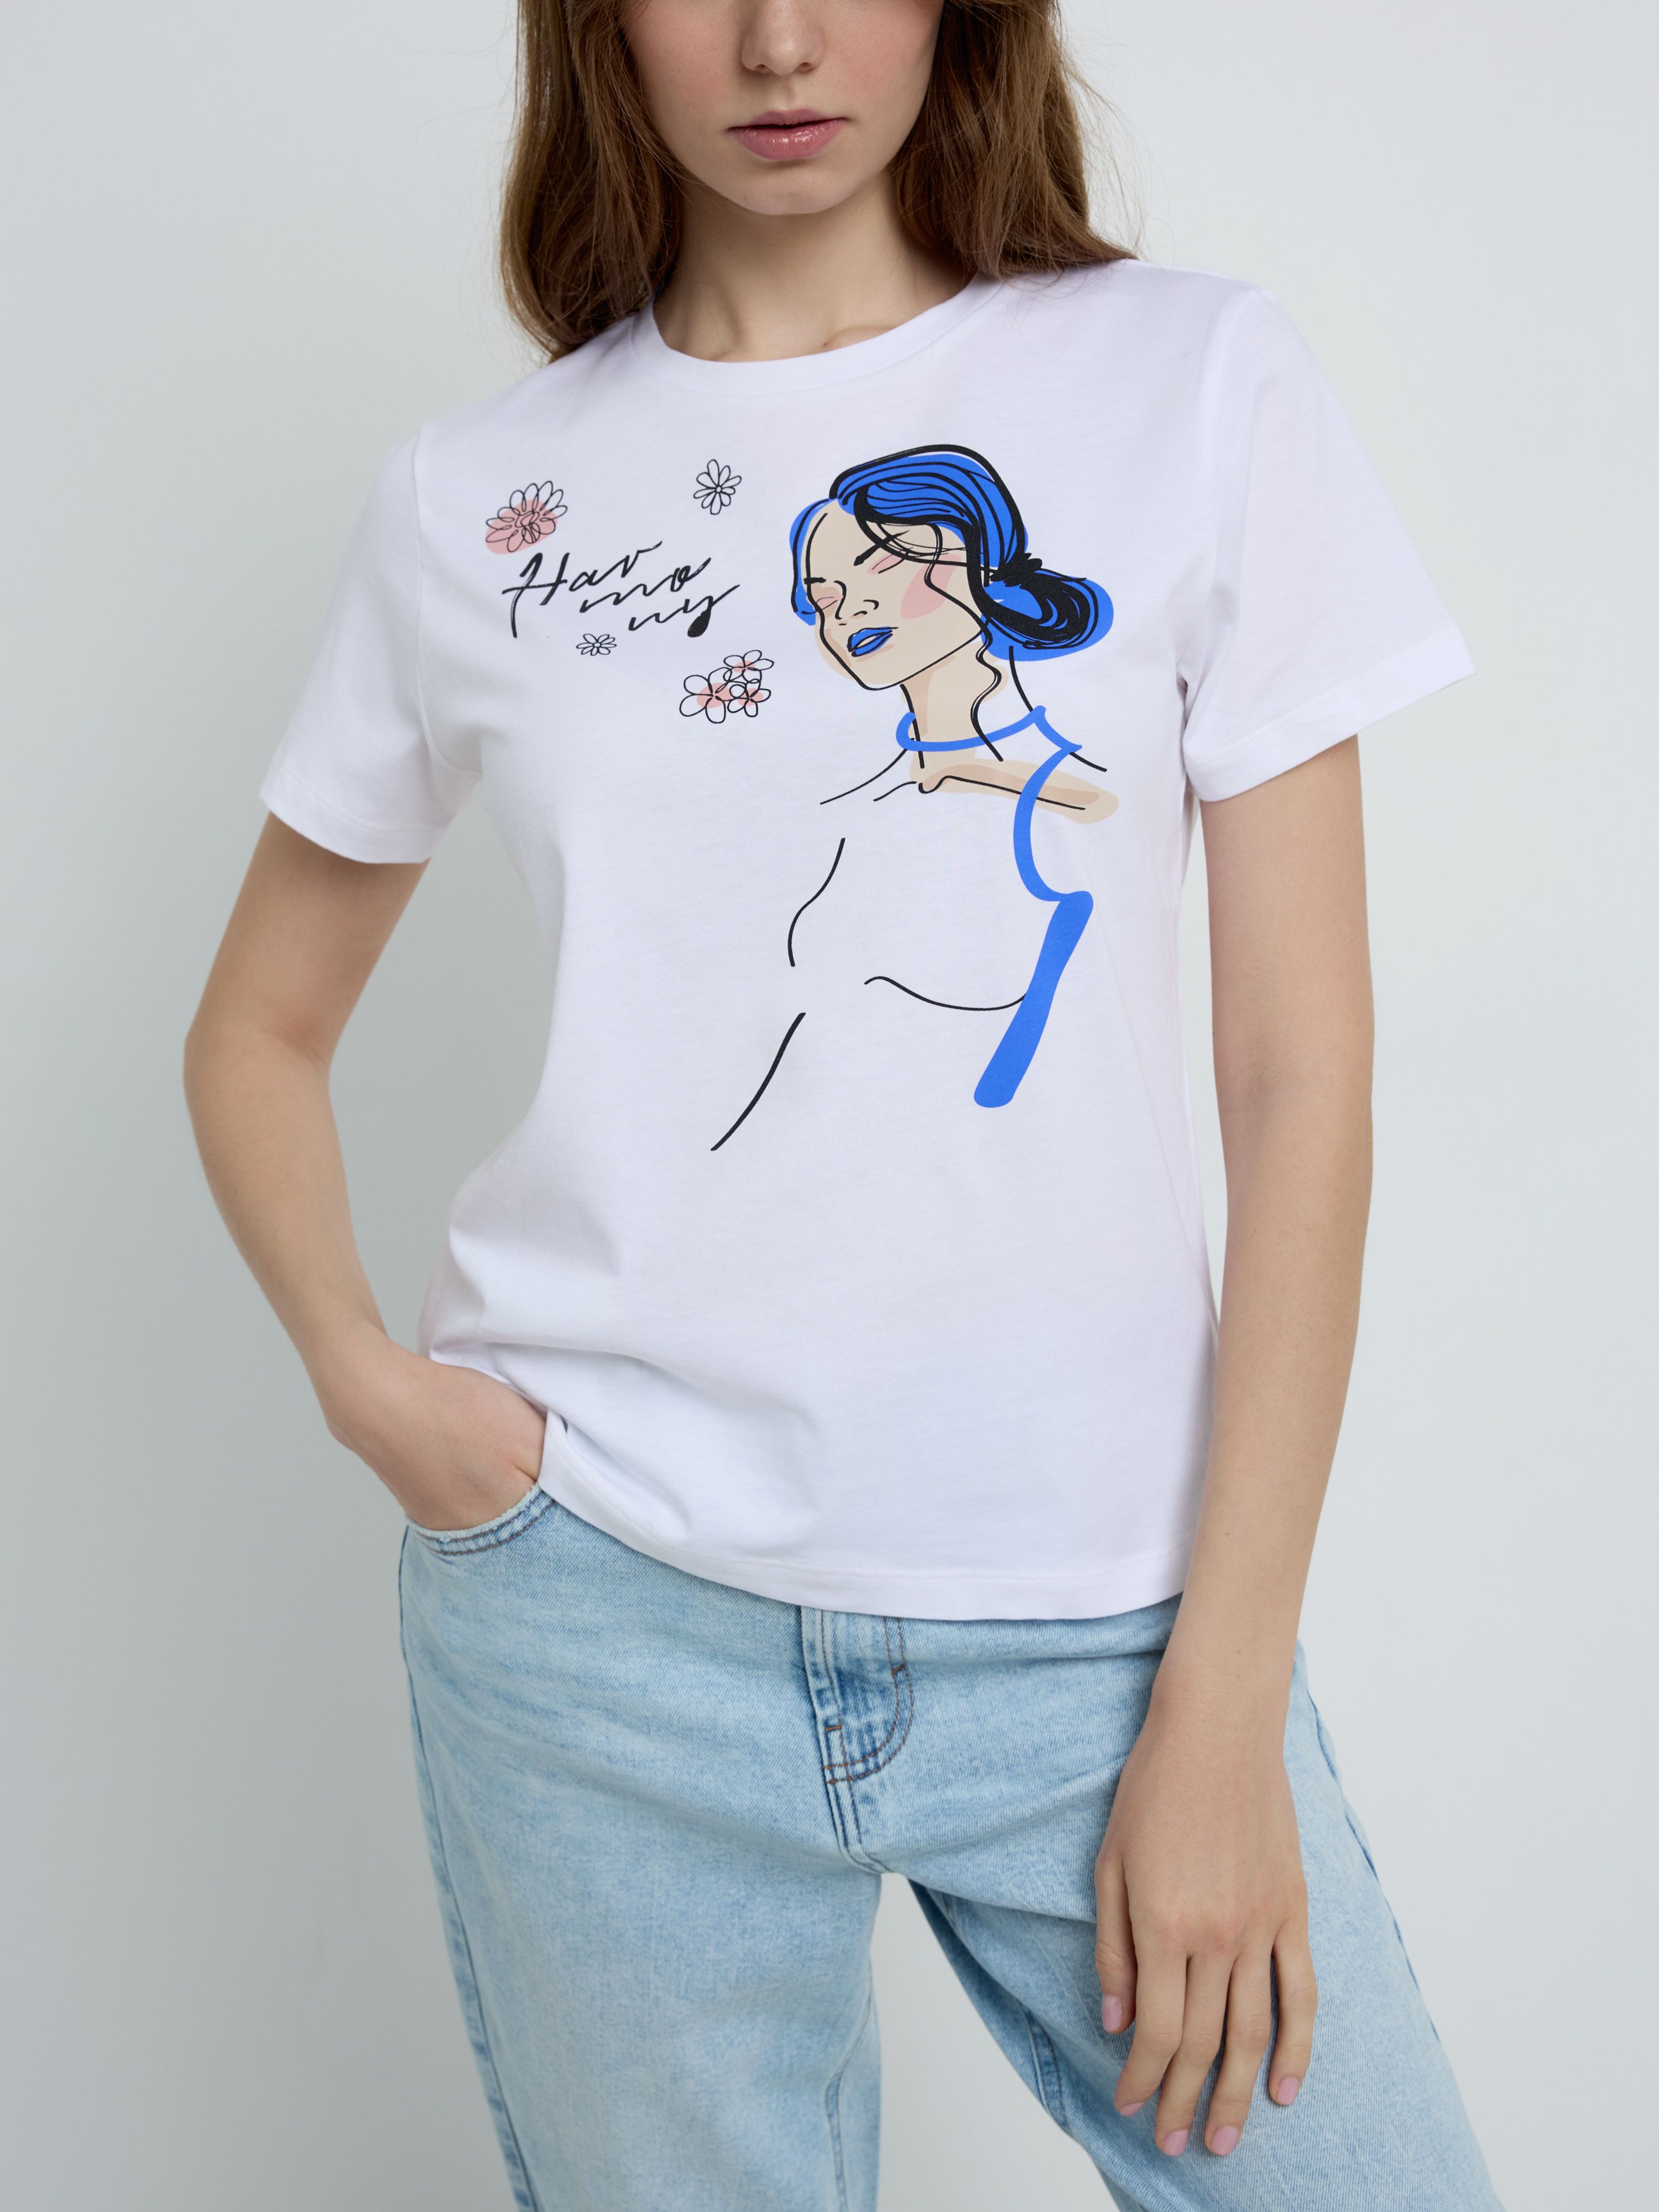 Базовая футболка с рисунком «Individuality» LD 2233 Conte ⭐️, цвет white, размер 170-100/xl